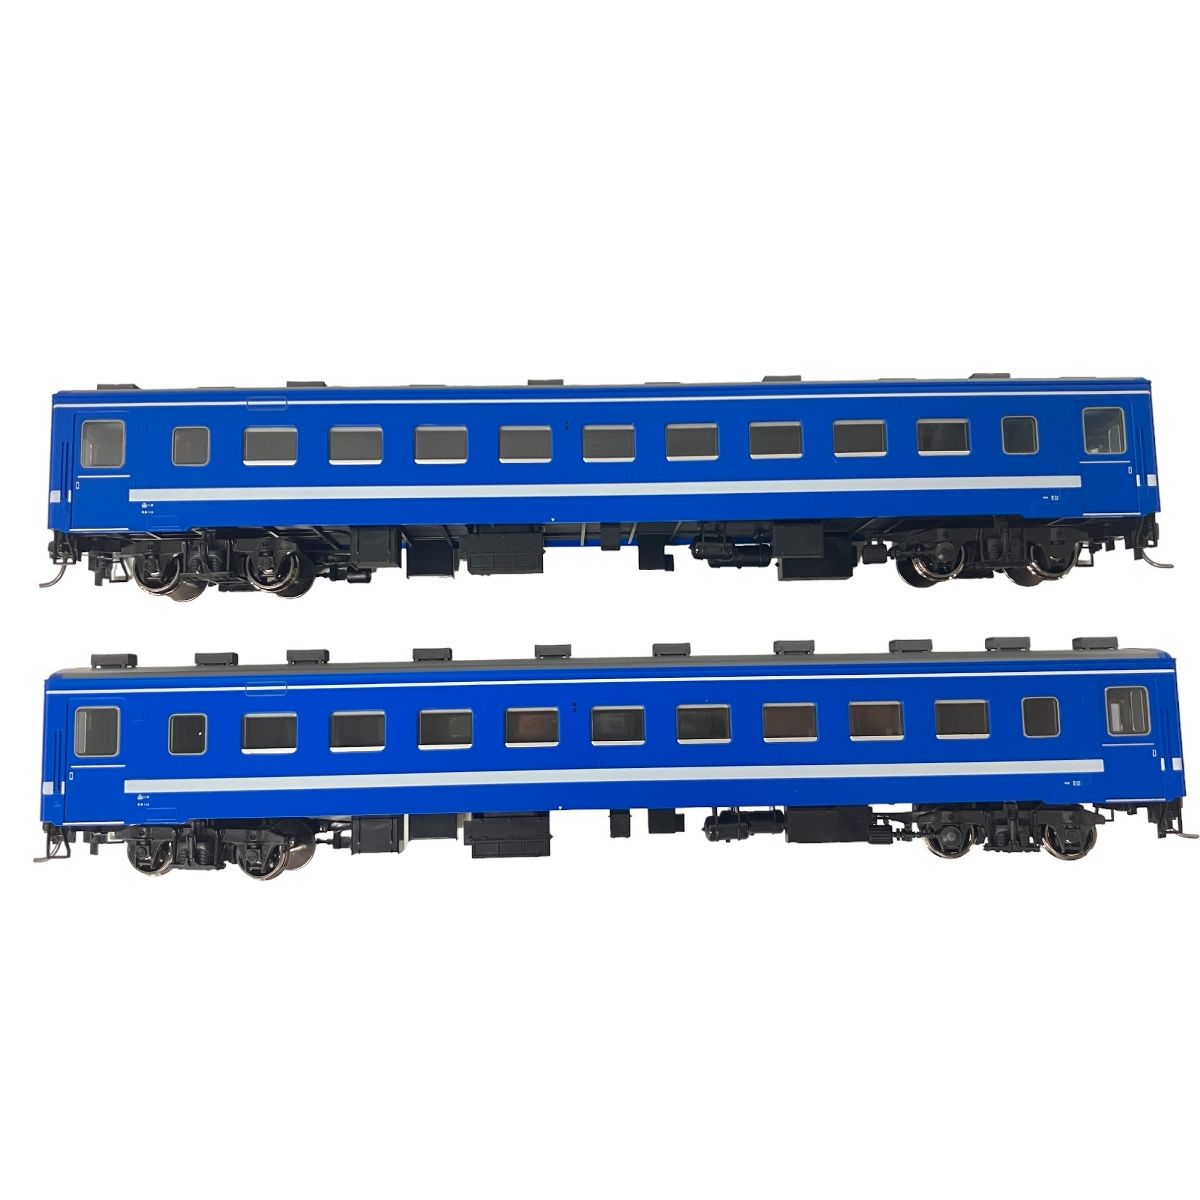 全品無料TOMIX HO-9096 JR50系51形客車 海峡色 セット HOゲージ 鉄道模型 中古 美品 F6433991 JR、国鉄車輌